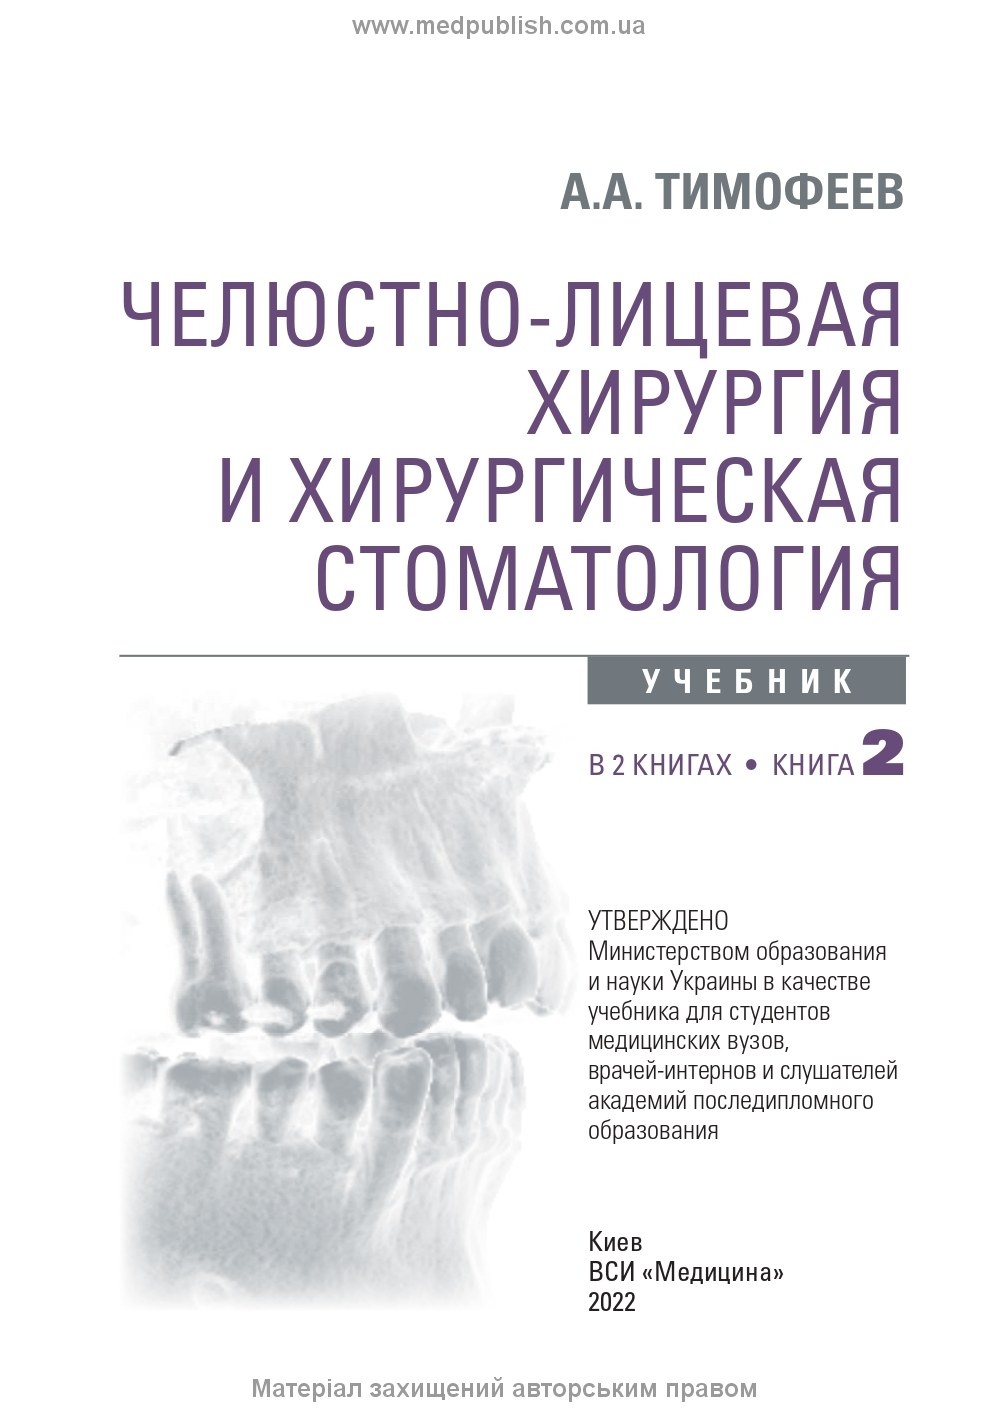 Челюстно-лицевая хирургия и хирургическая стоматология: в 2 книгах. Книга 2: учебник. Автор — А.А. Тимофеев. 